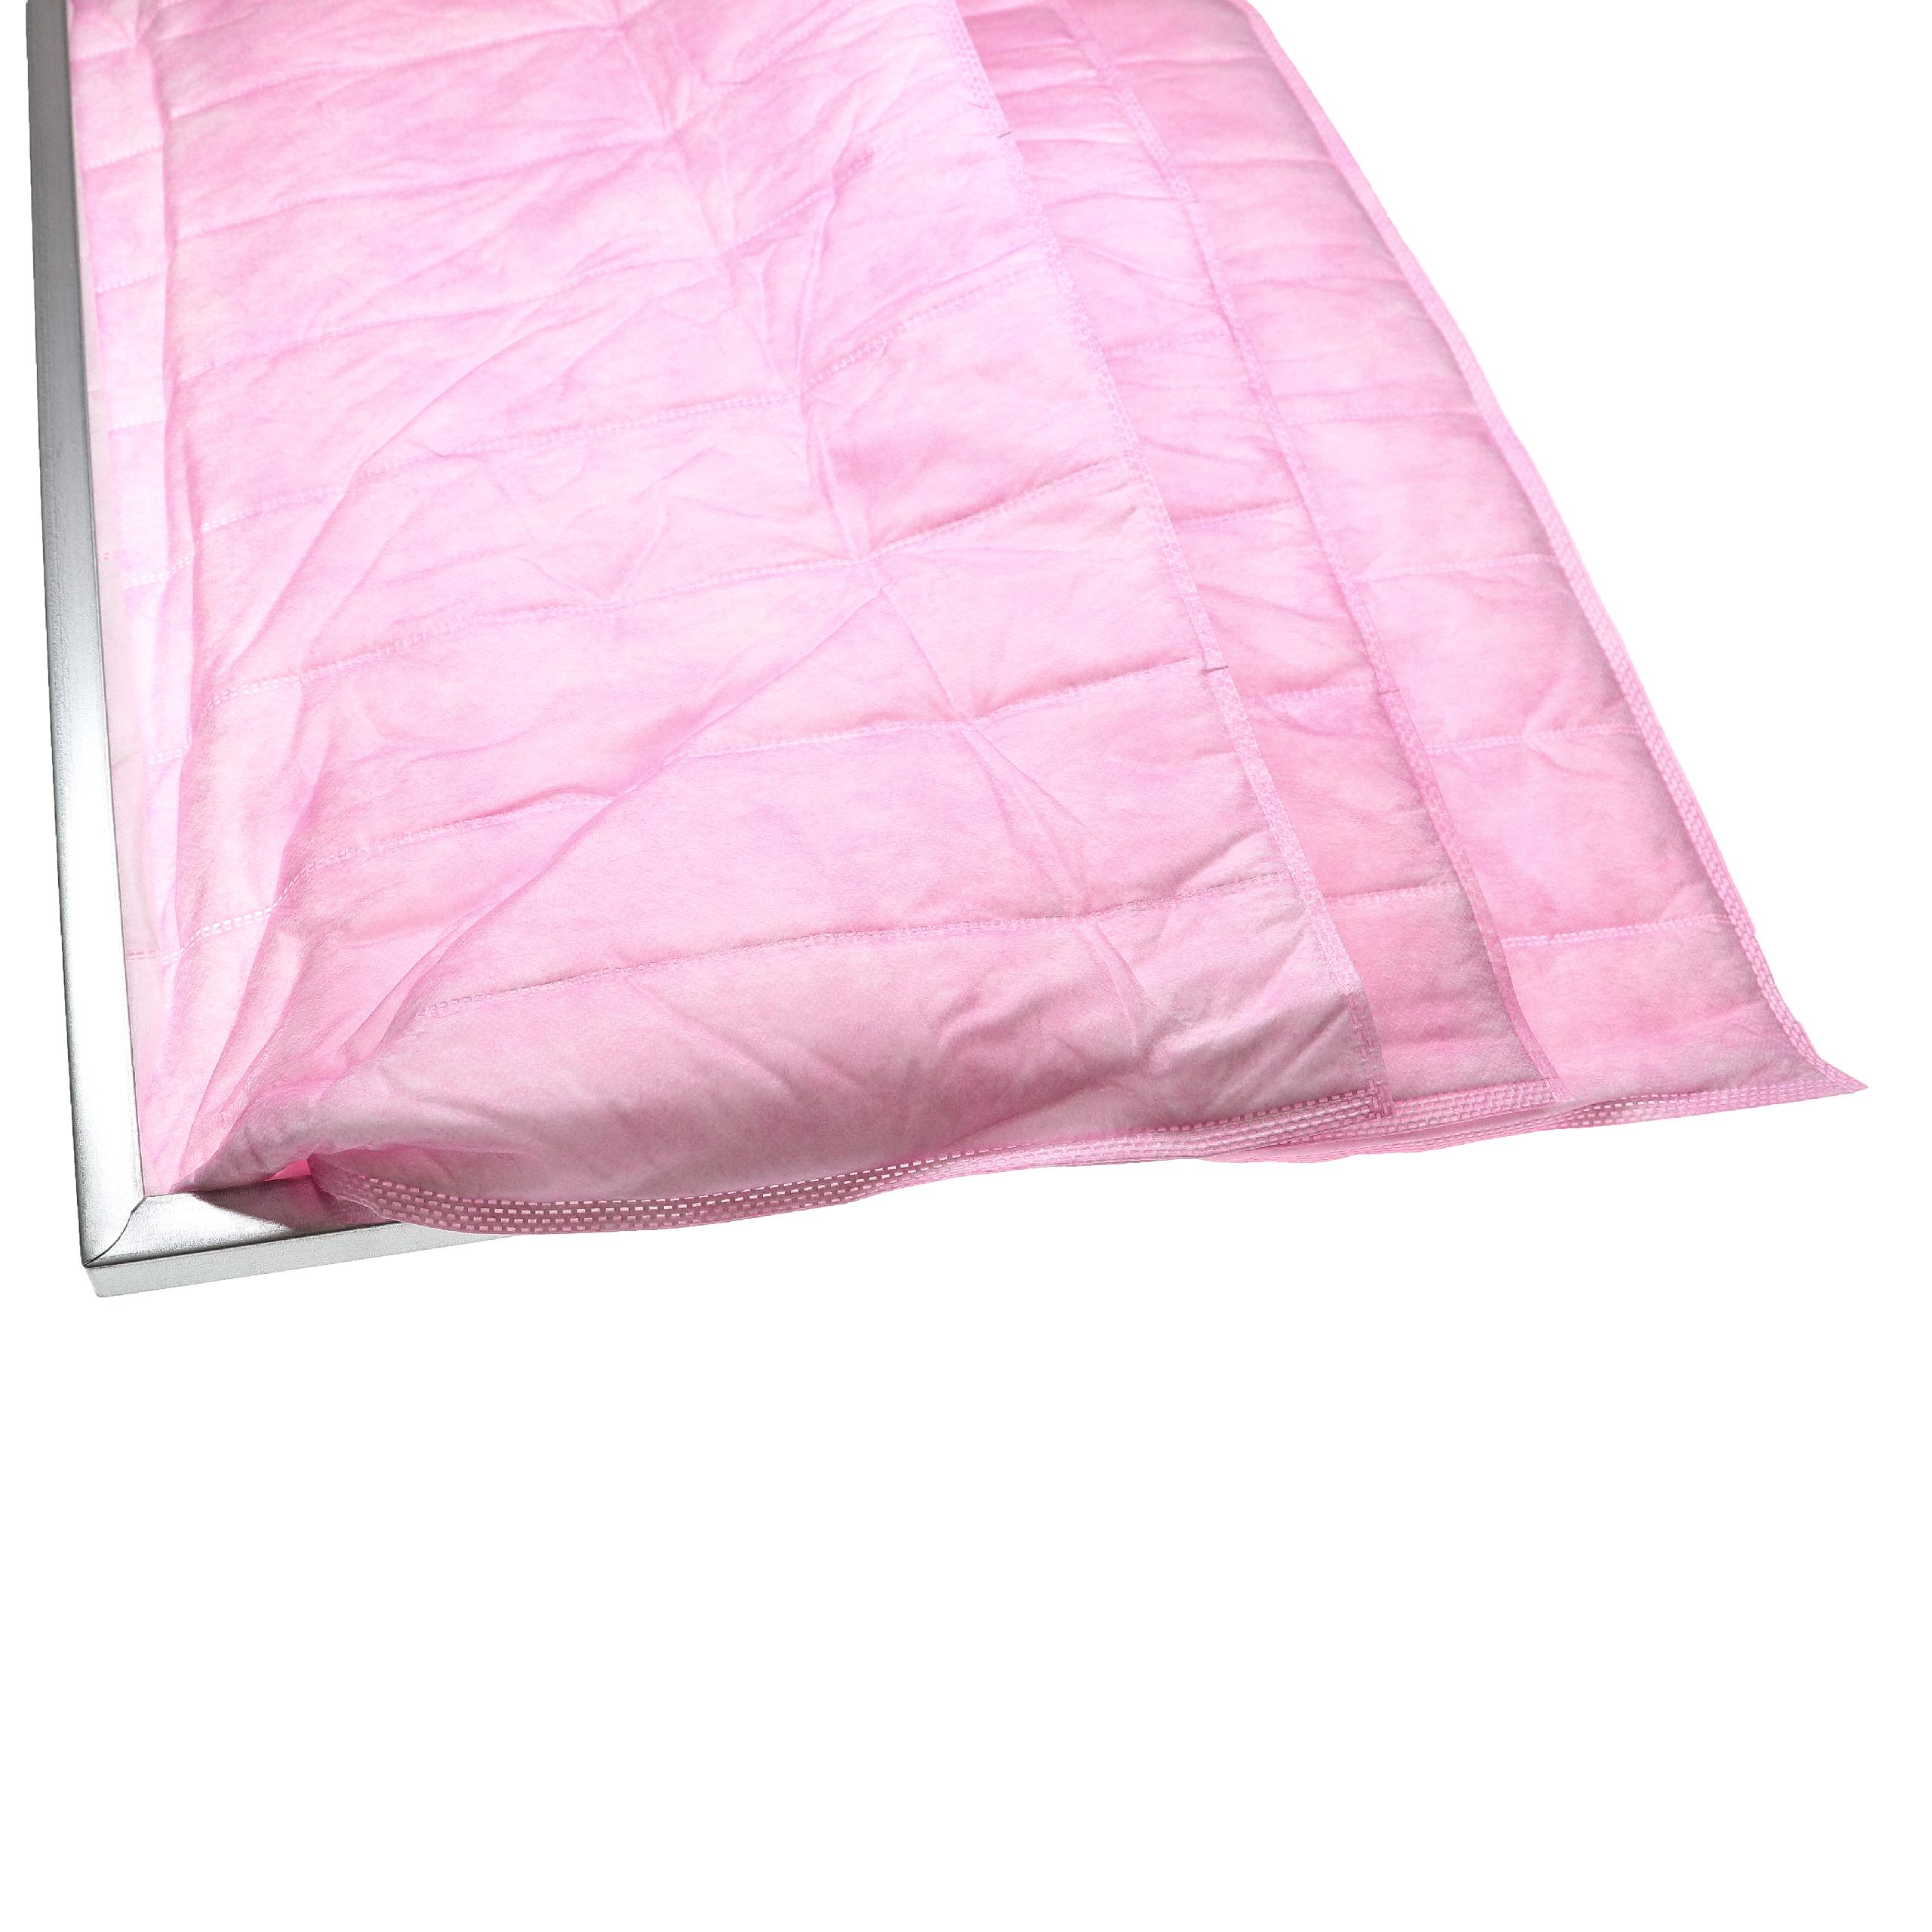 Taschenfilter F7 passend für Klimaanlagen, Lüftungsanlagen - 36 x 59,2 x 28,7 cm